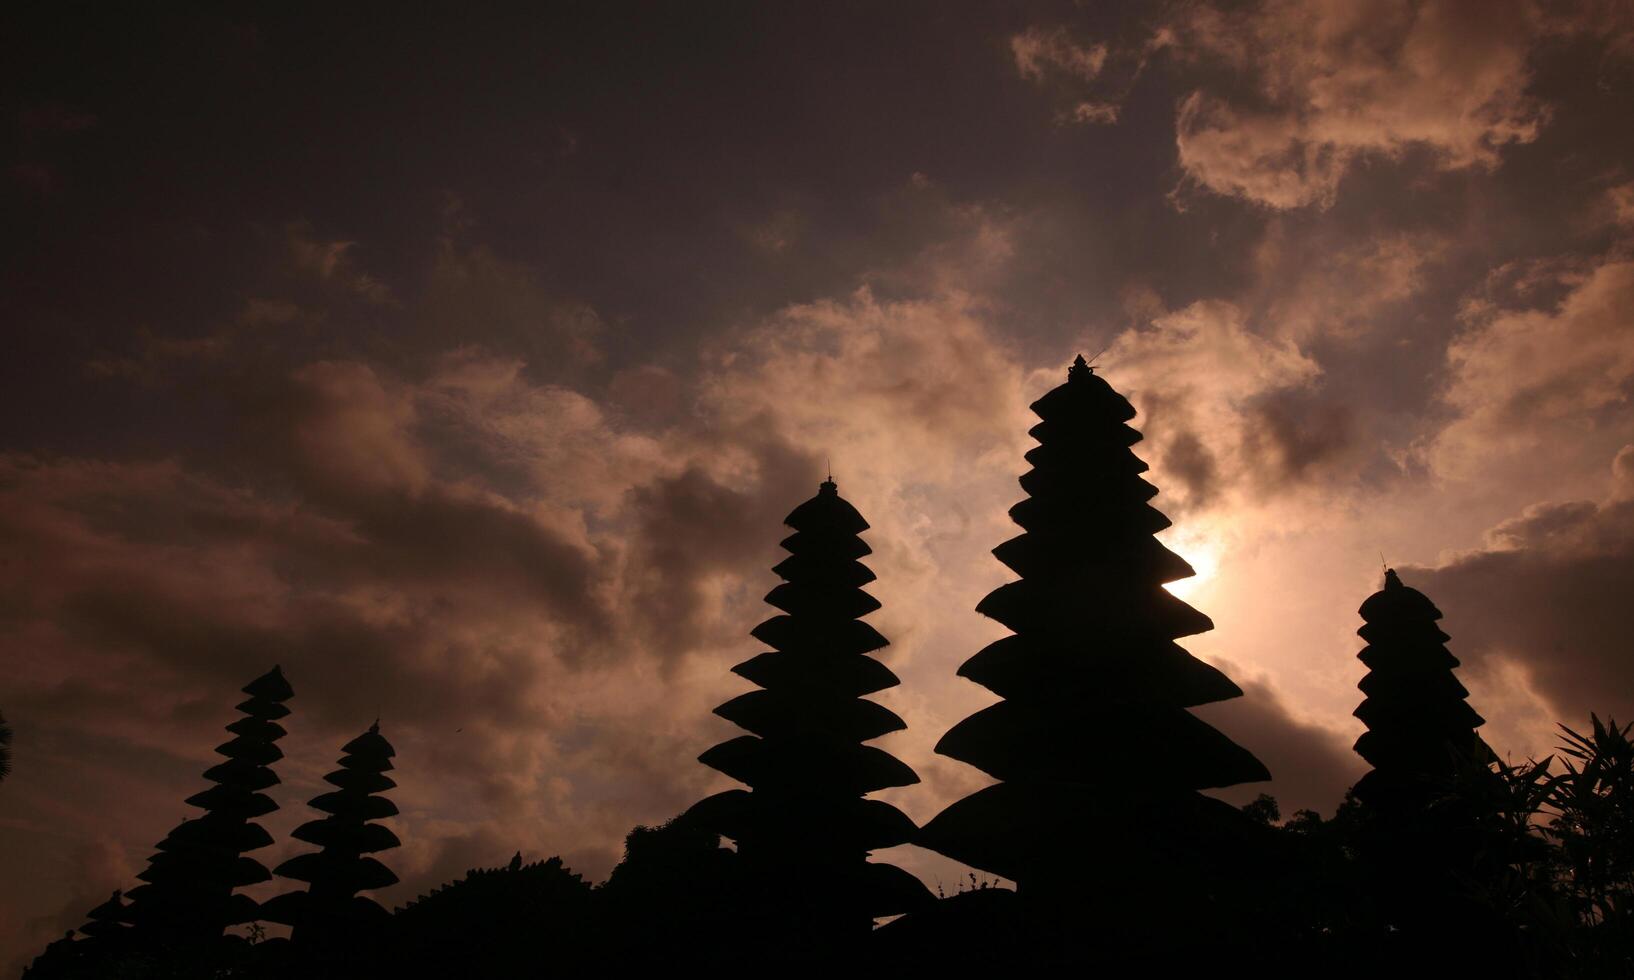 bakgrund av de tystnad av nyepi dag med de tempel på solnedgång foto